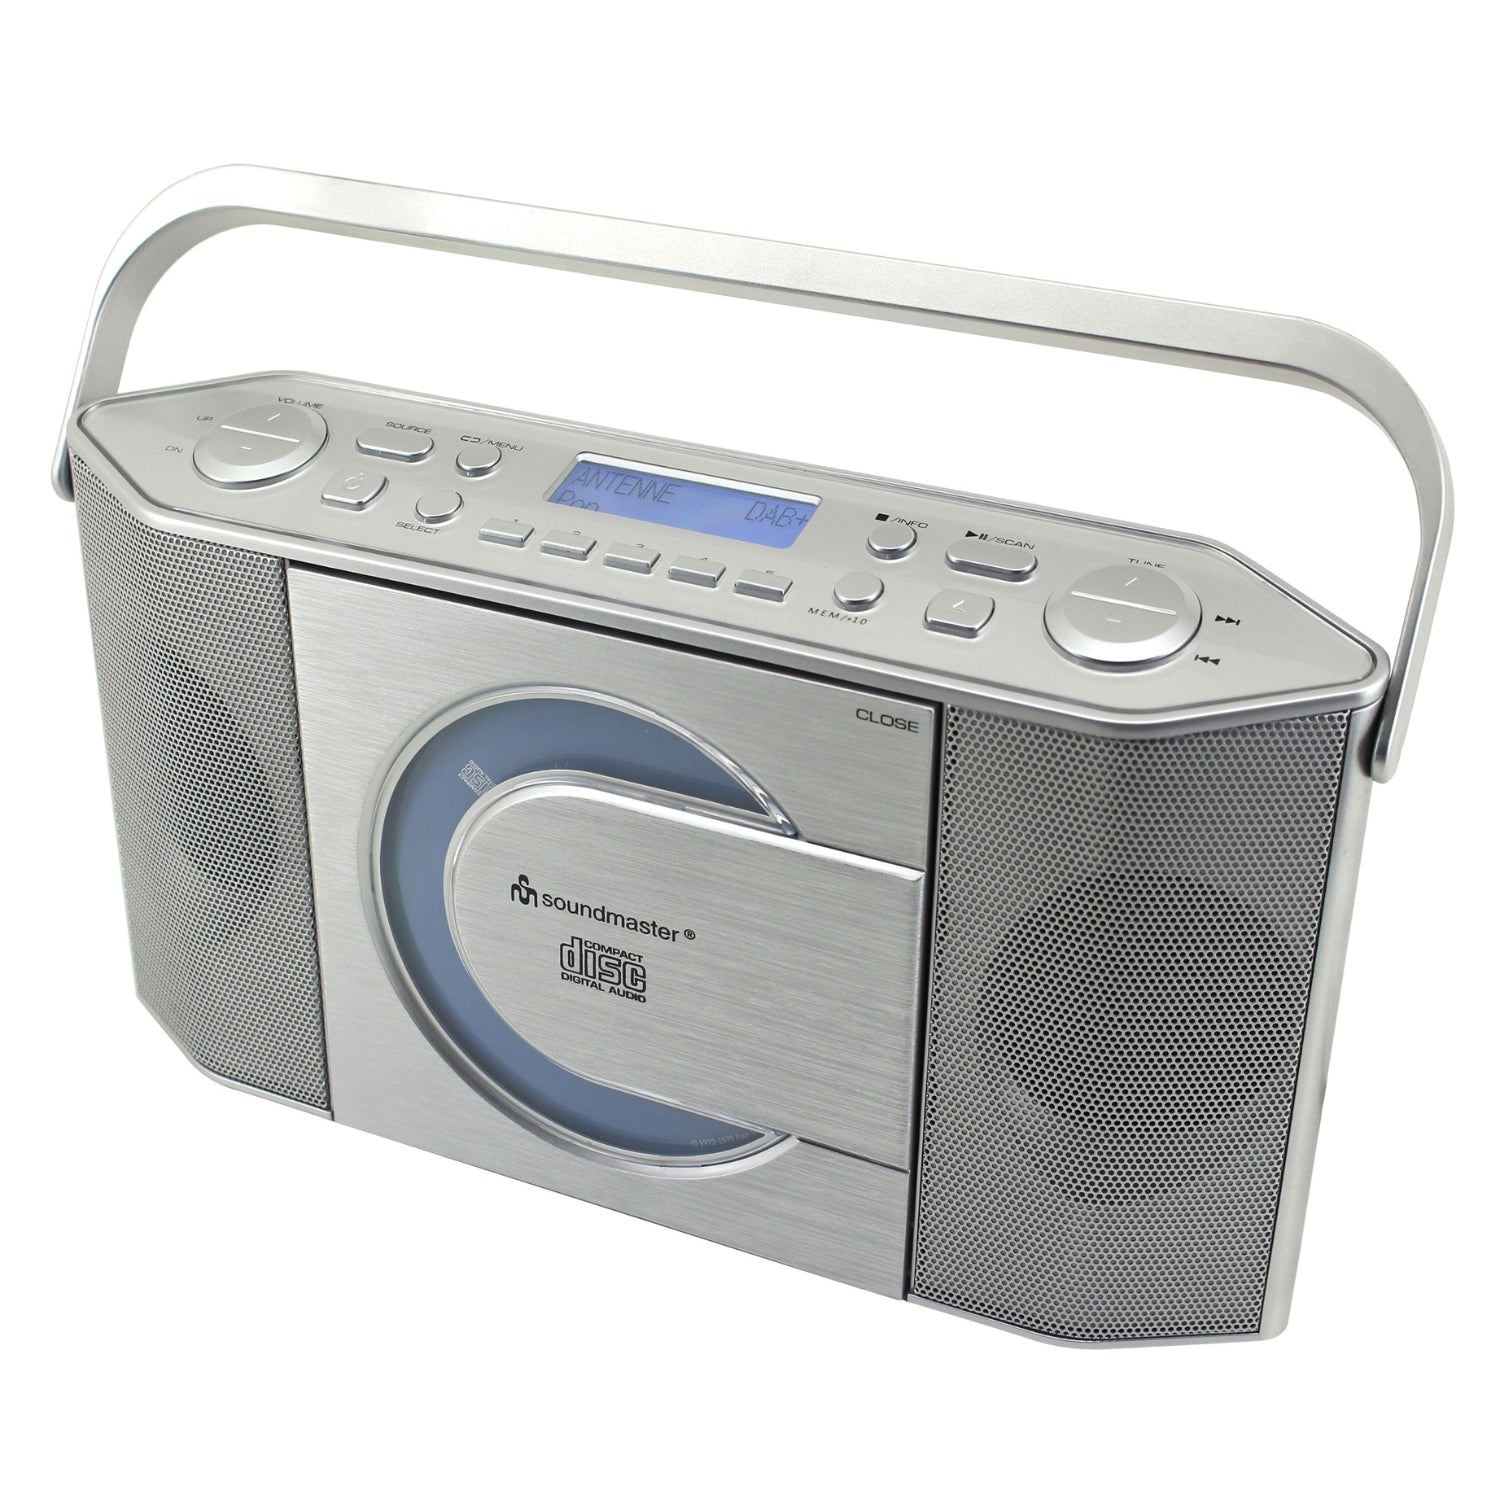 B-ITEM Soundmaster RCD1770SI enregistreur radio numérique DAB + avec USB et lecteur CD casque MP3 horloge